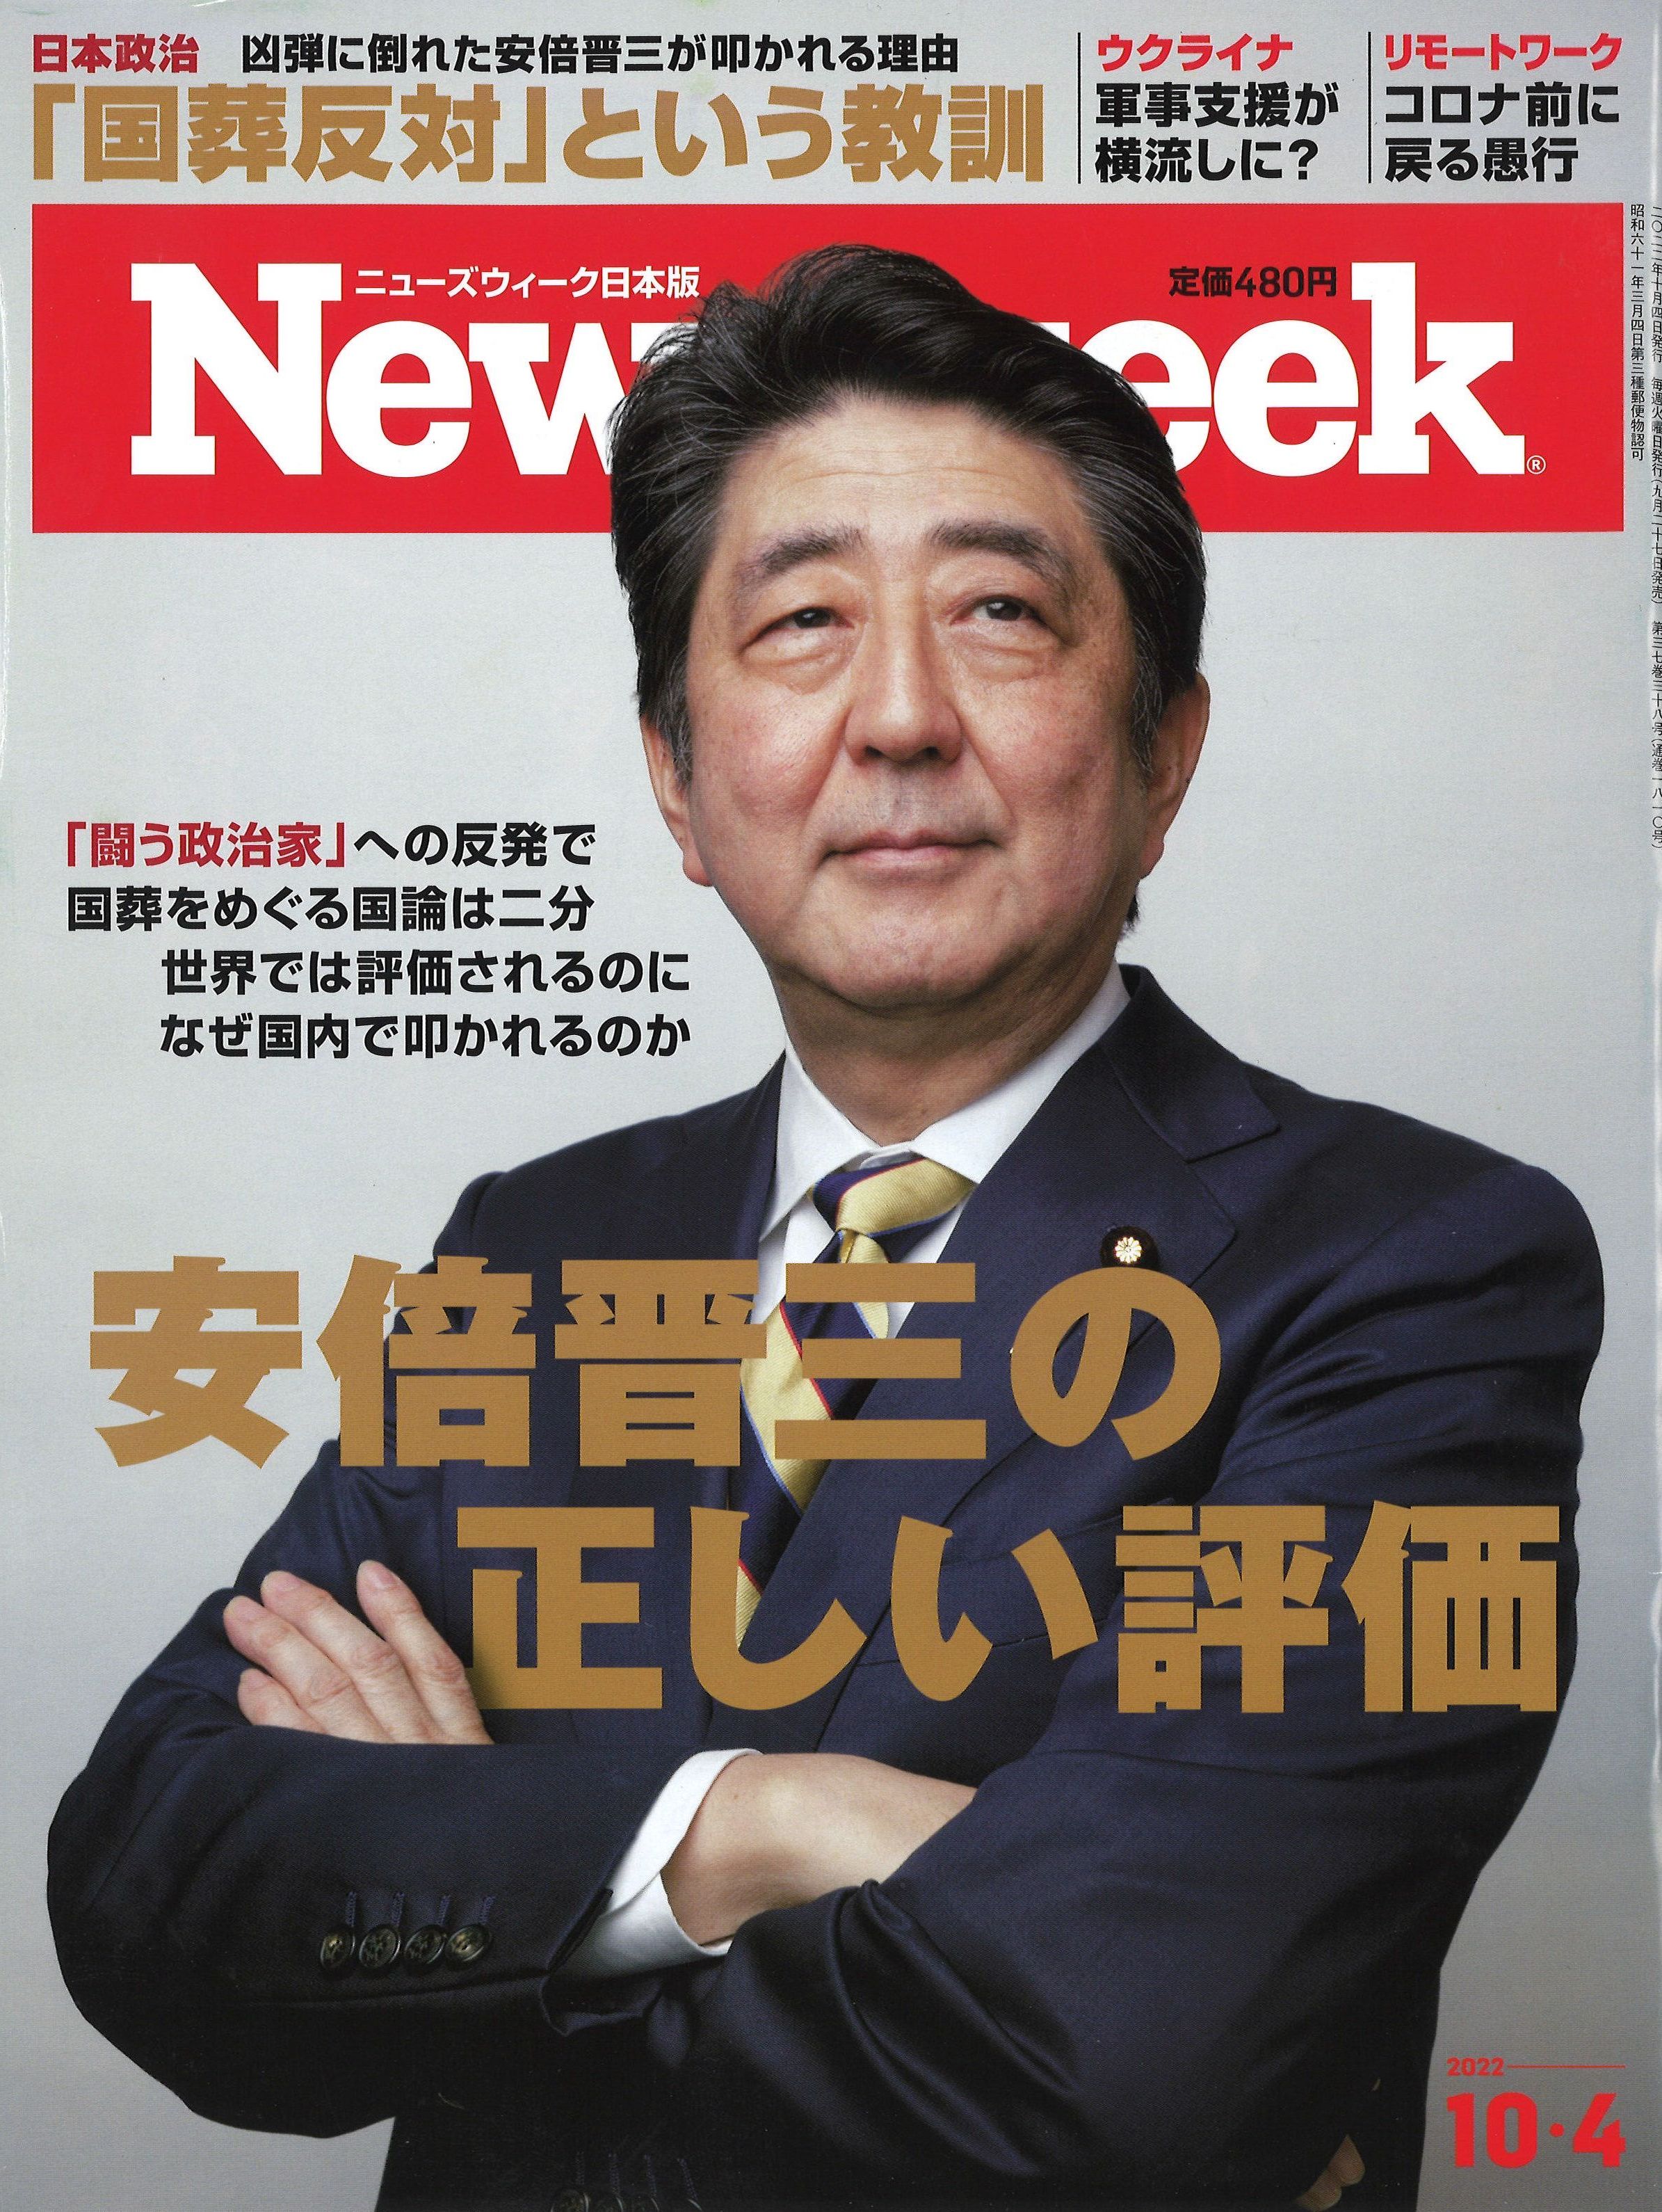 ●フリー110-3345 Newsweek日本版テレカ